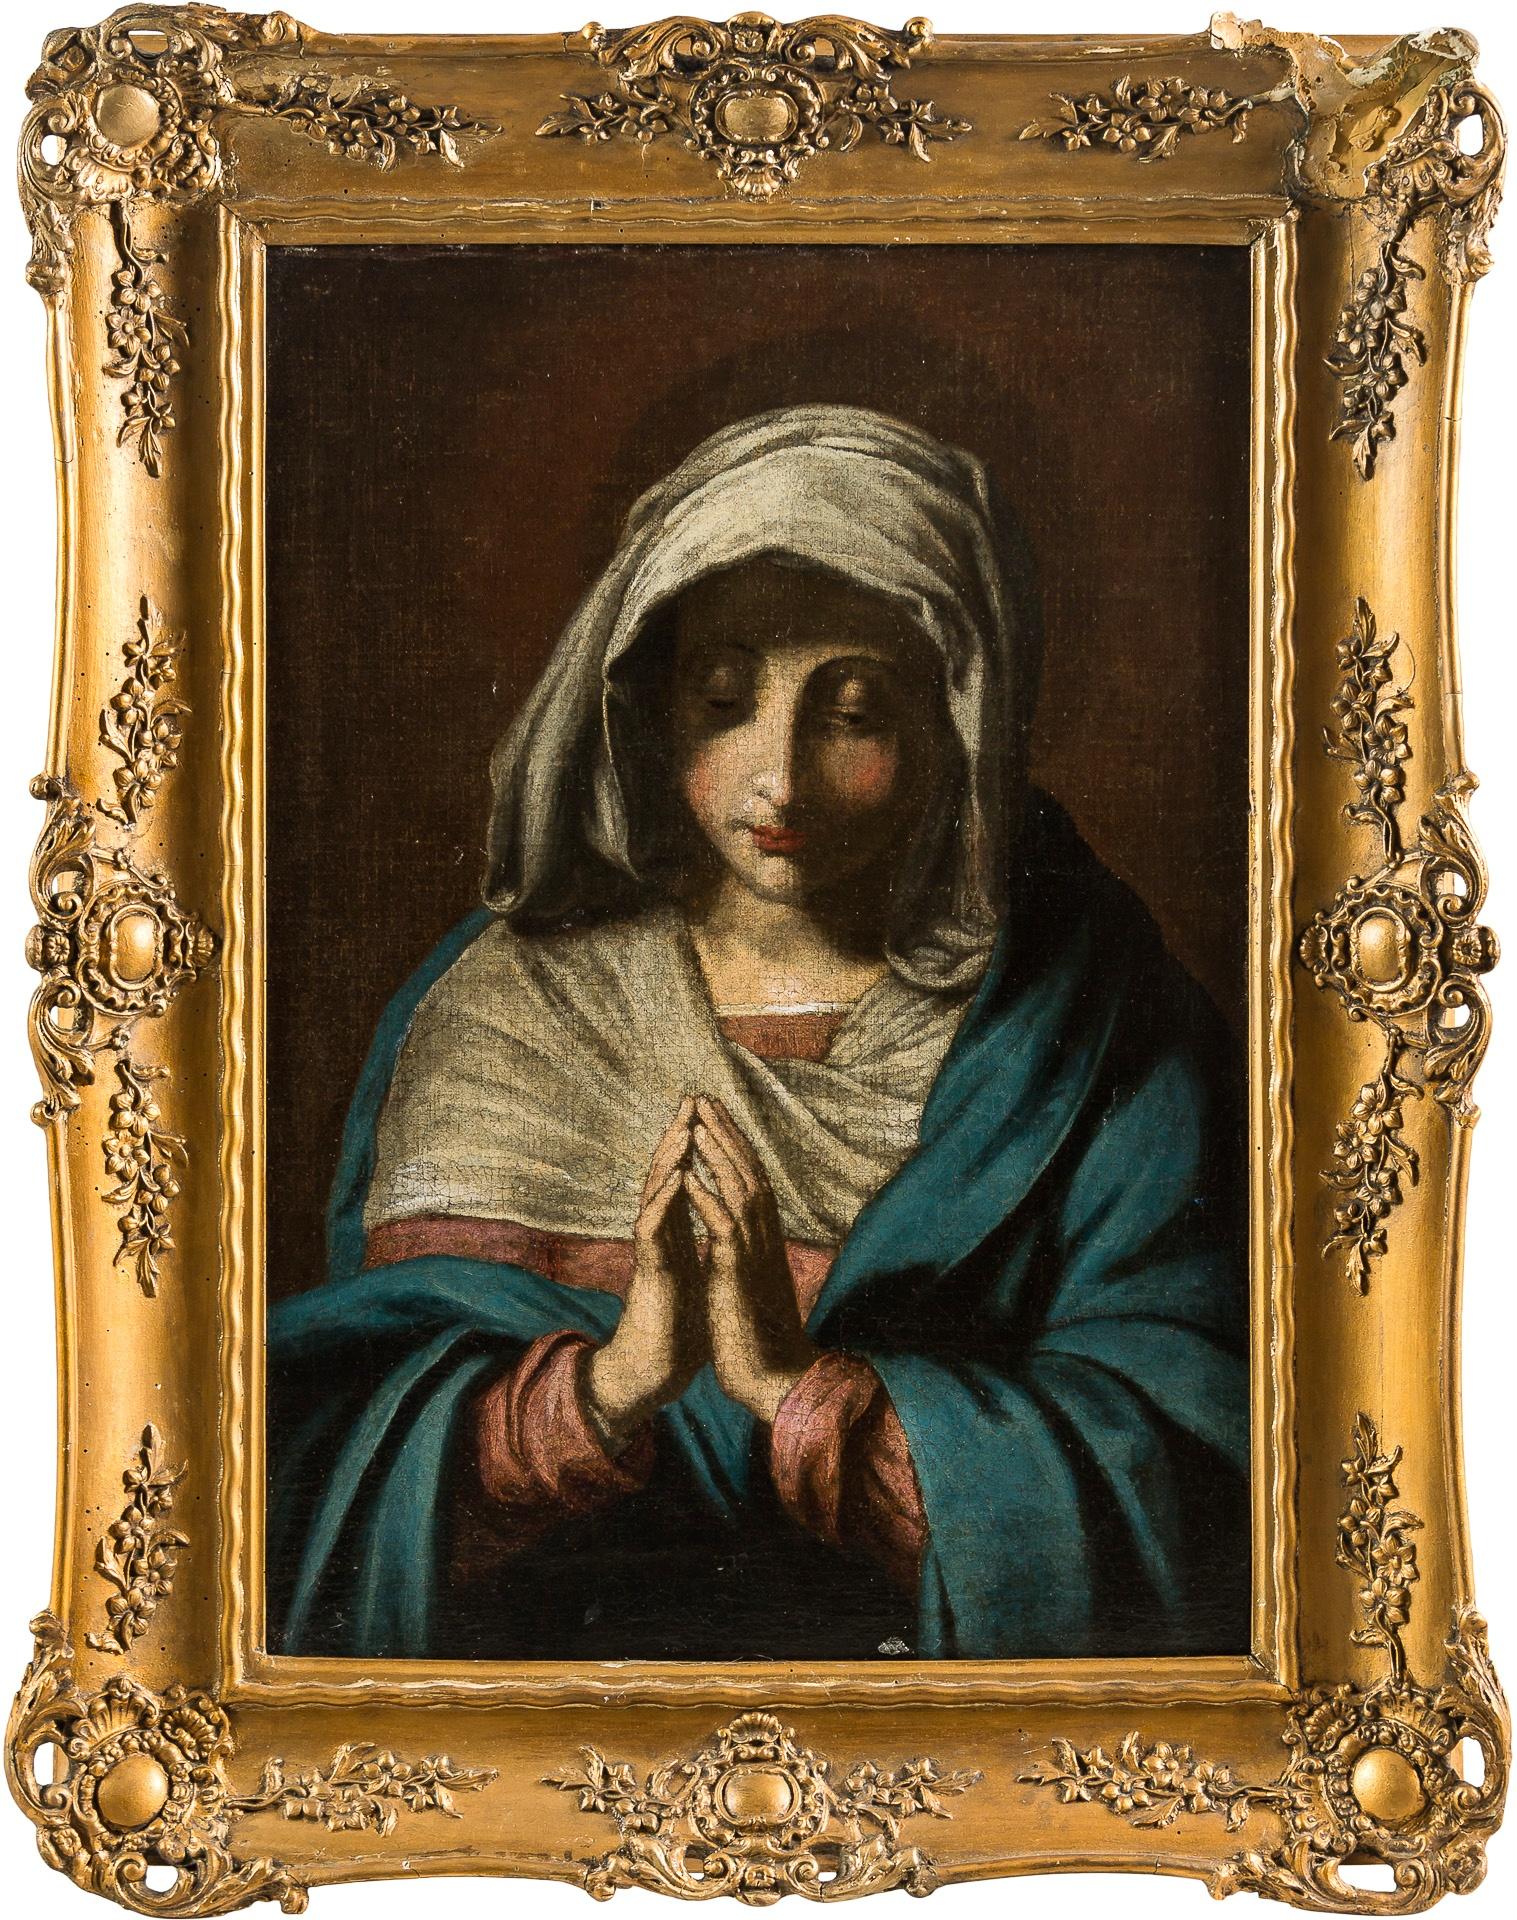 Unknown Figurative Painting - 17th century Italian figure painting - Virgin Madonna Oil on canvas Sassoferrato